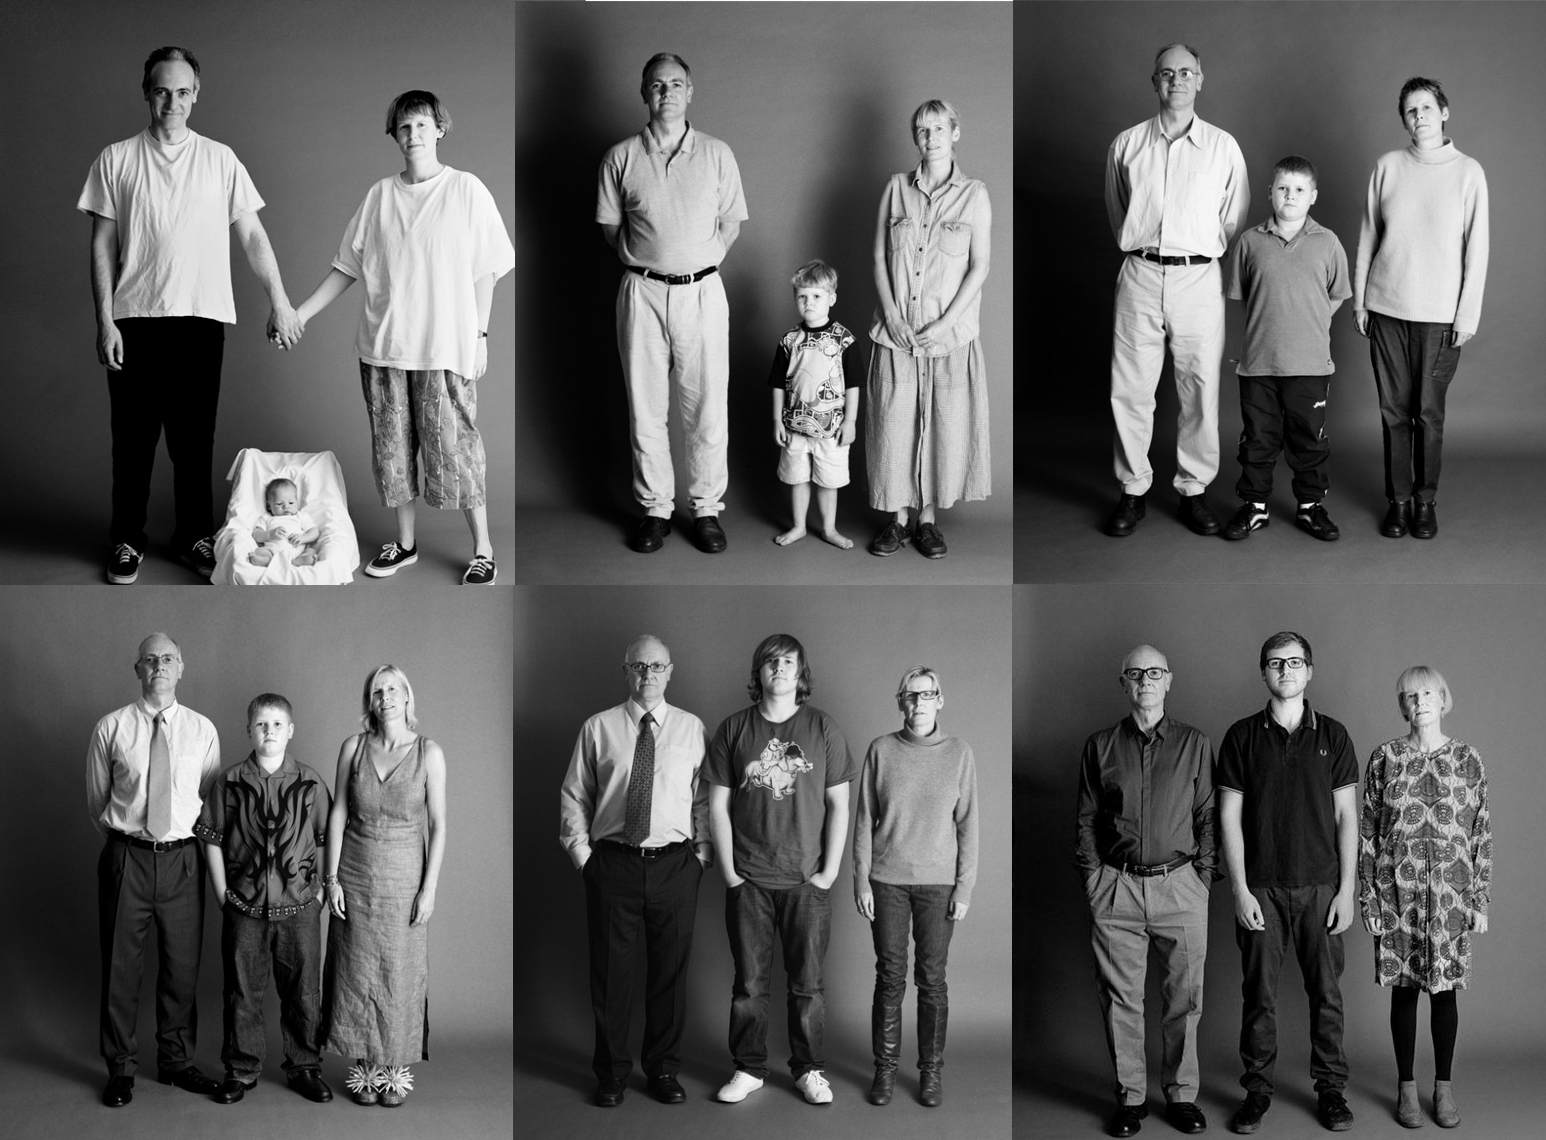 عائلة تلتقط لنفسها صورة من كل عام بنفس الوضعية على مدار 22 عام